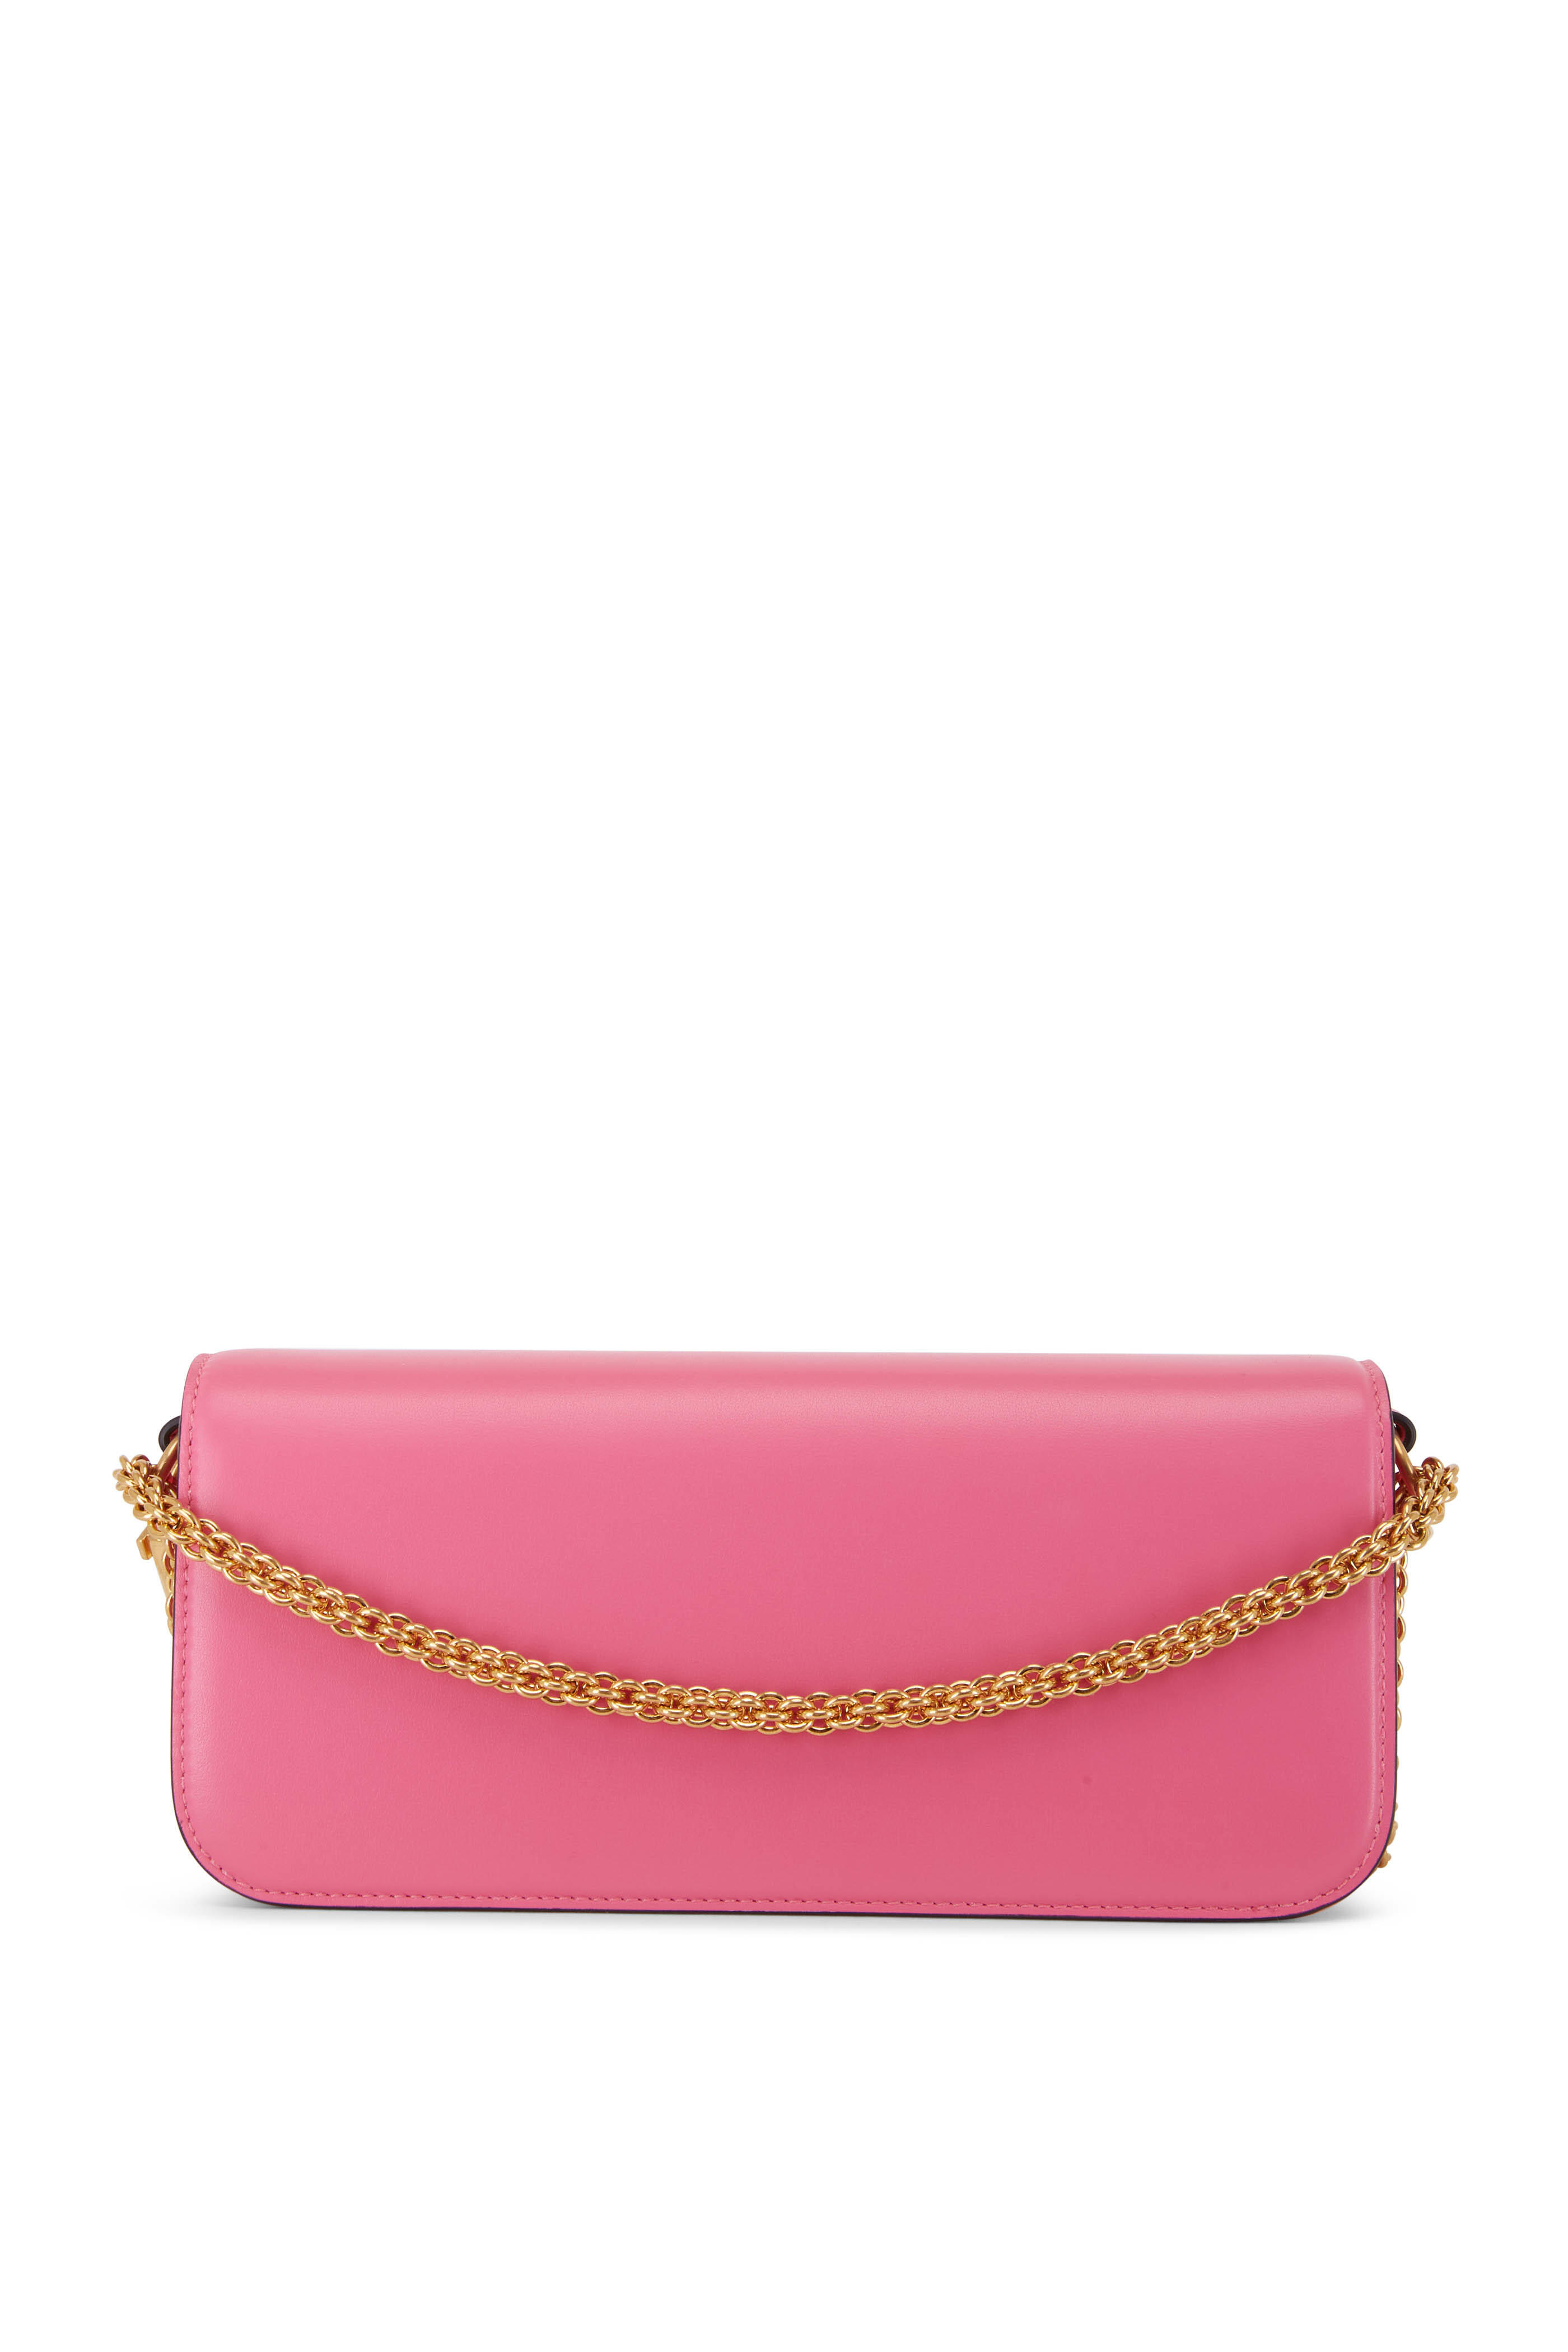 Valentino Garavani - VLogo Pink Leather East West Shoulder Bag